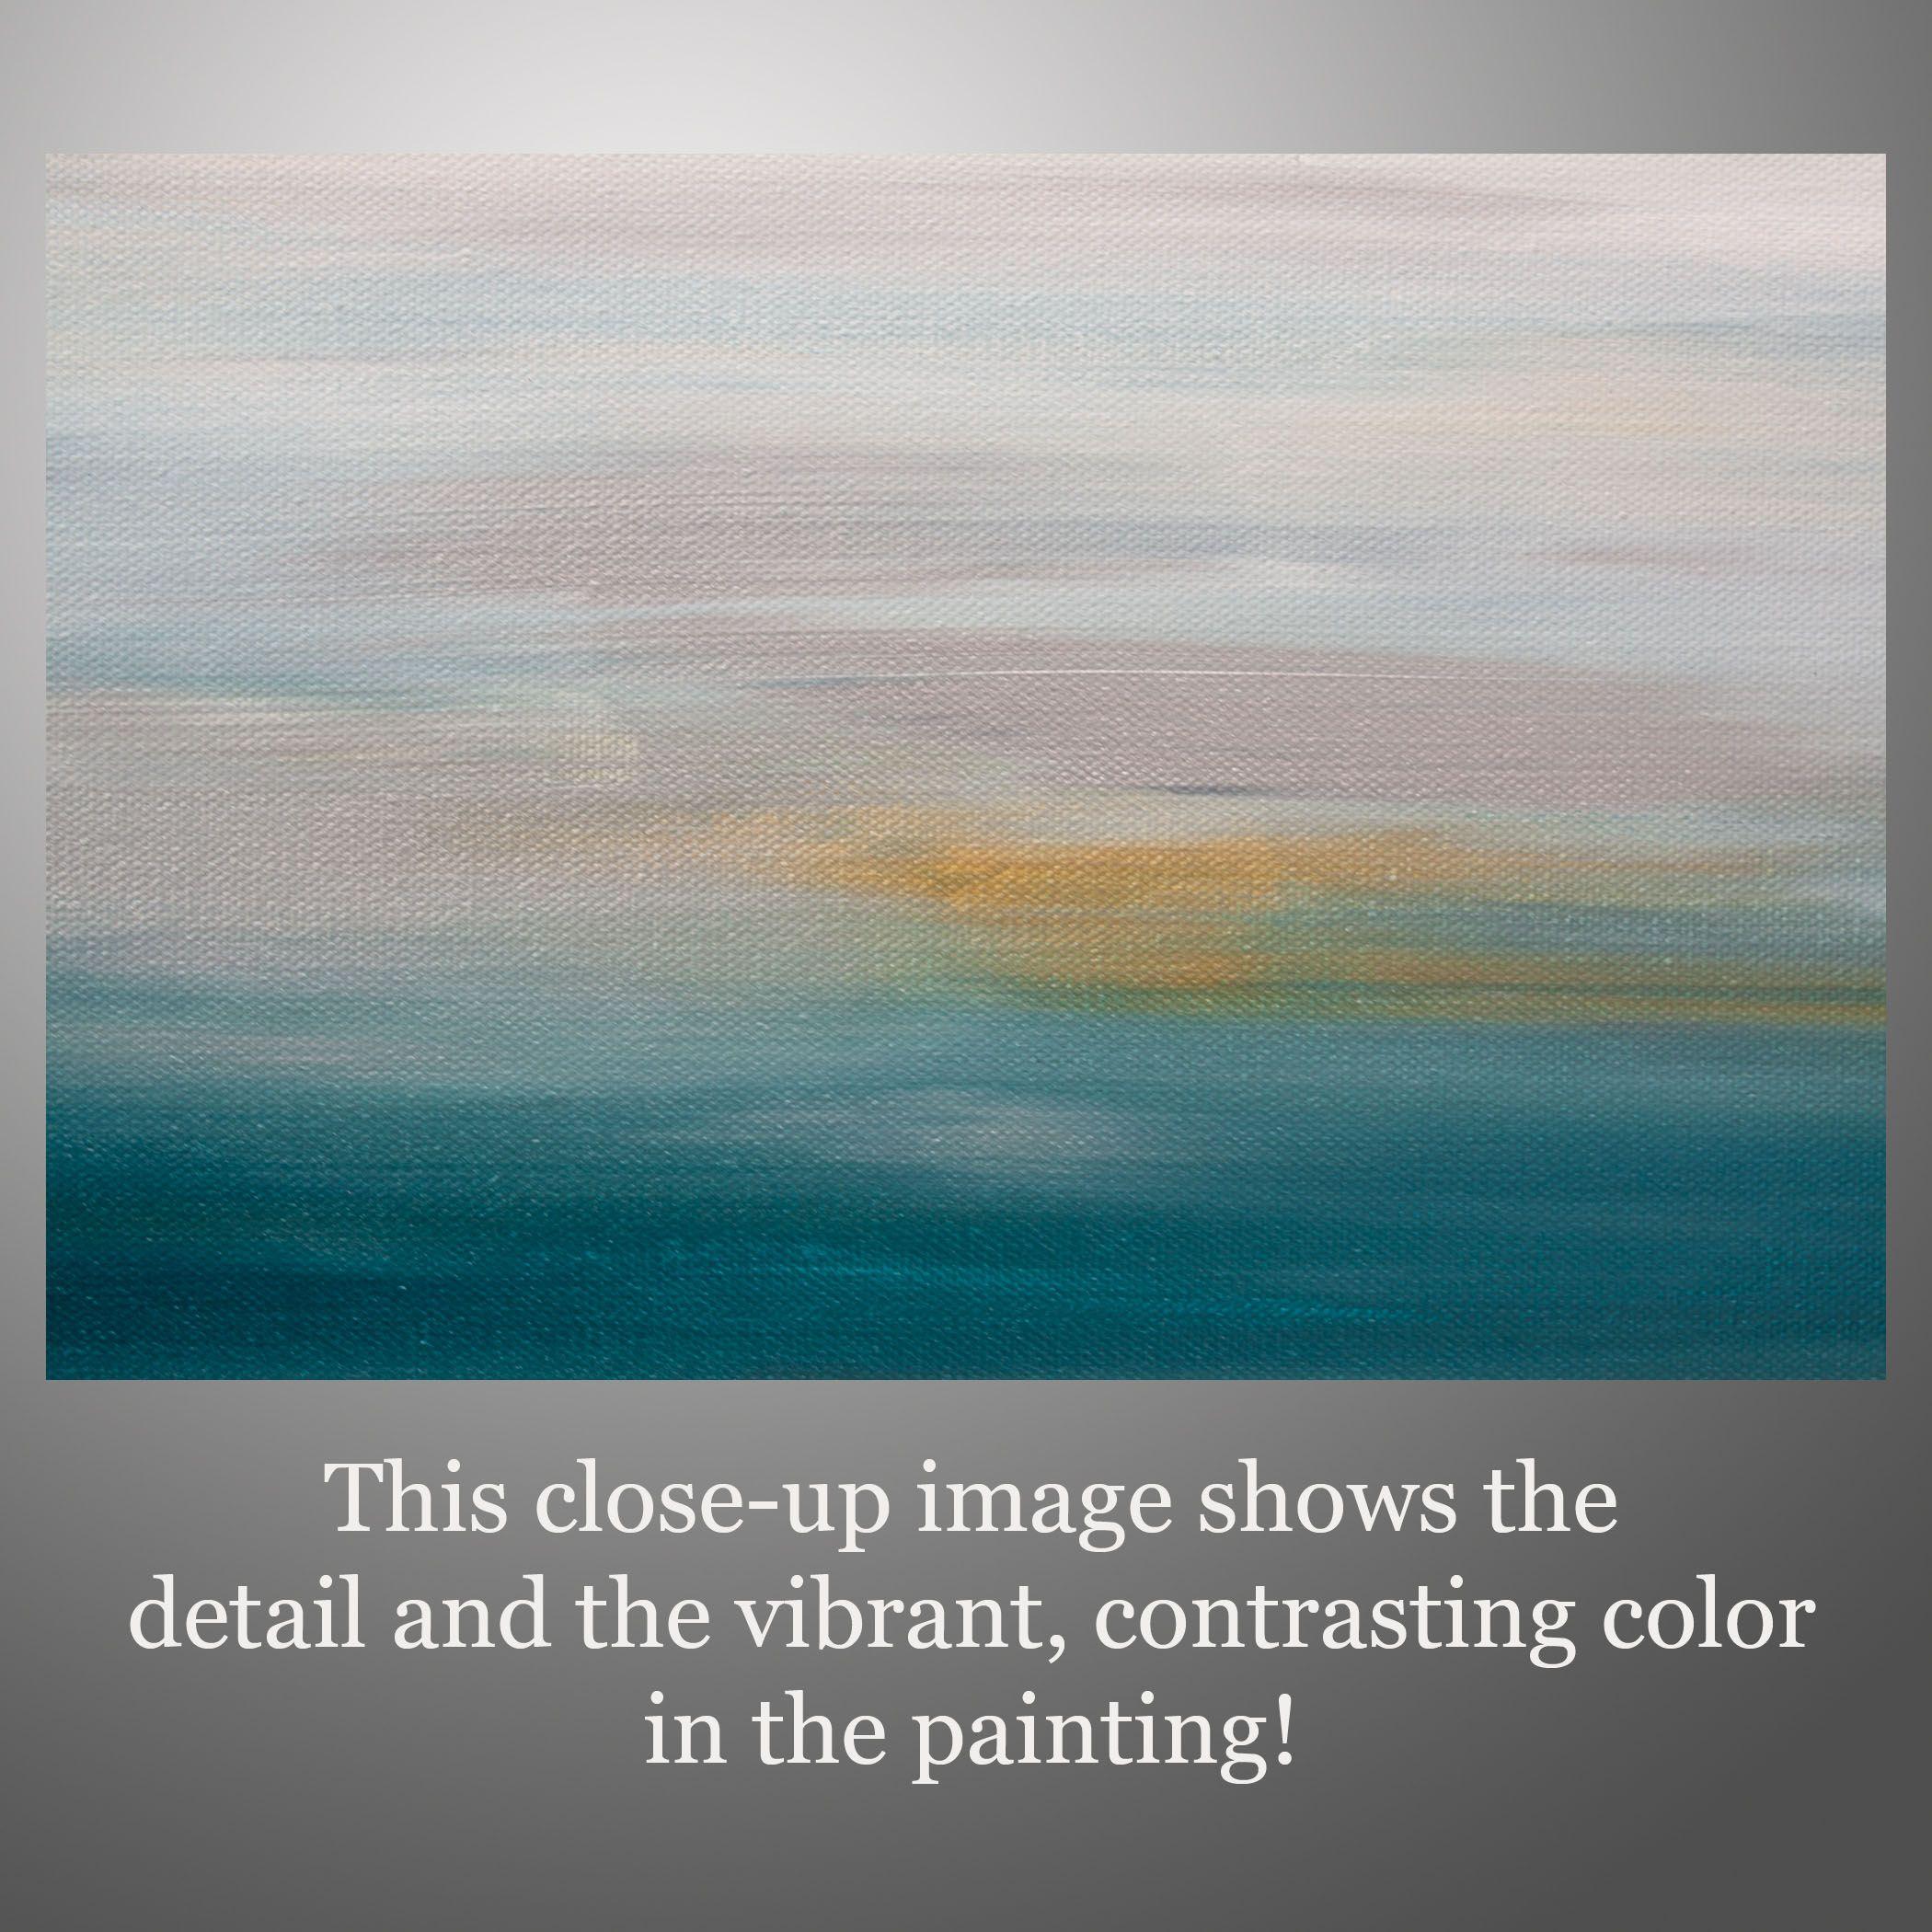 Sunset 65 ist ein Originalgemälde, das mit Acrylfarbe auf galerieumwickelter Leinwand gemalt wurde. Es hat eine Breite von 20 Zoll und eine Höhe von 20 Zoll mit einer Tiefe von 1,5 Zoll (20x20x1,5).     Die Farben des Gemäldes sind Weiß, Blau, Grau,